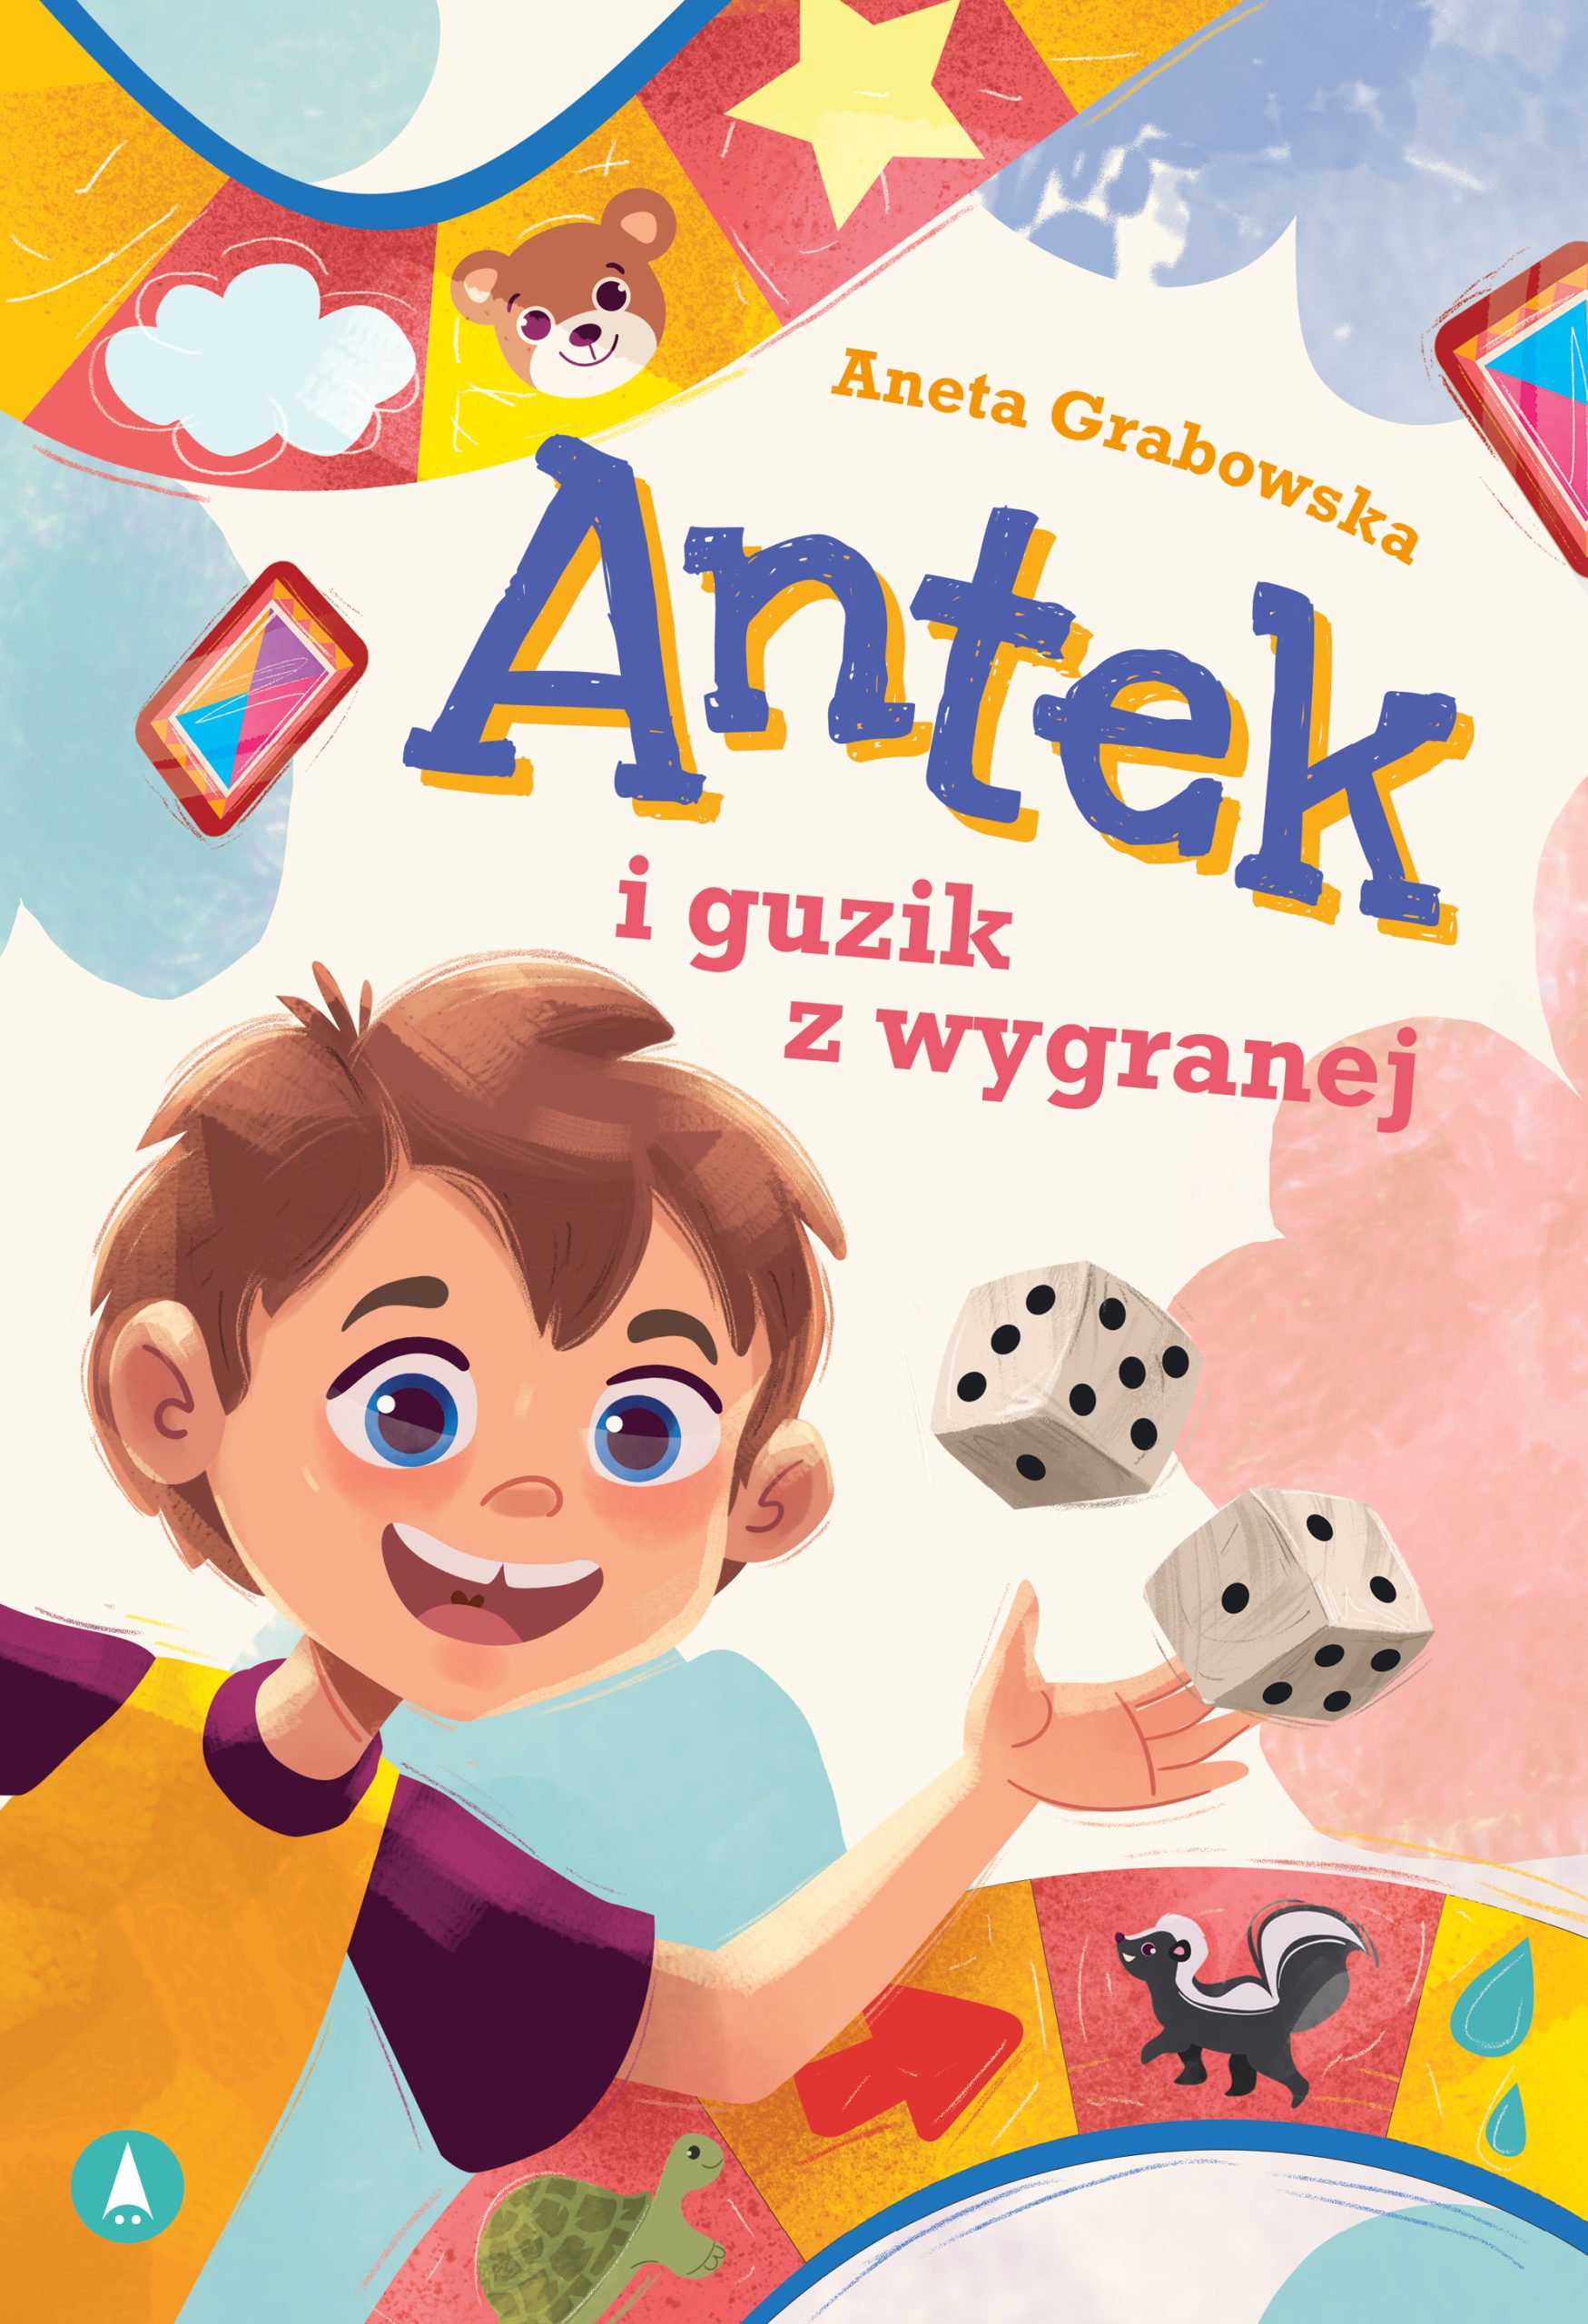 Antek - Przyjaciel od Serca. Nowa seria książek bliskich sercom dzieci